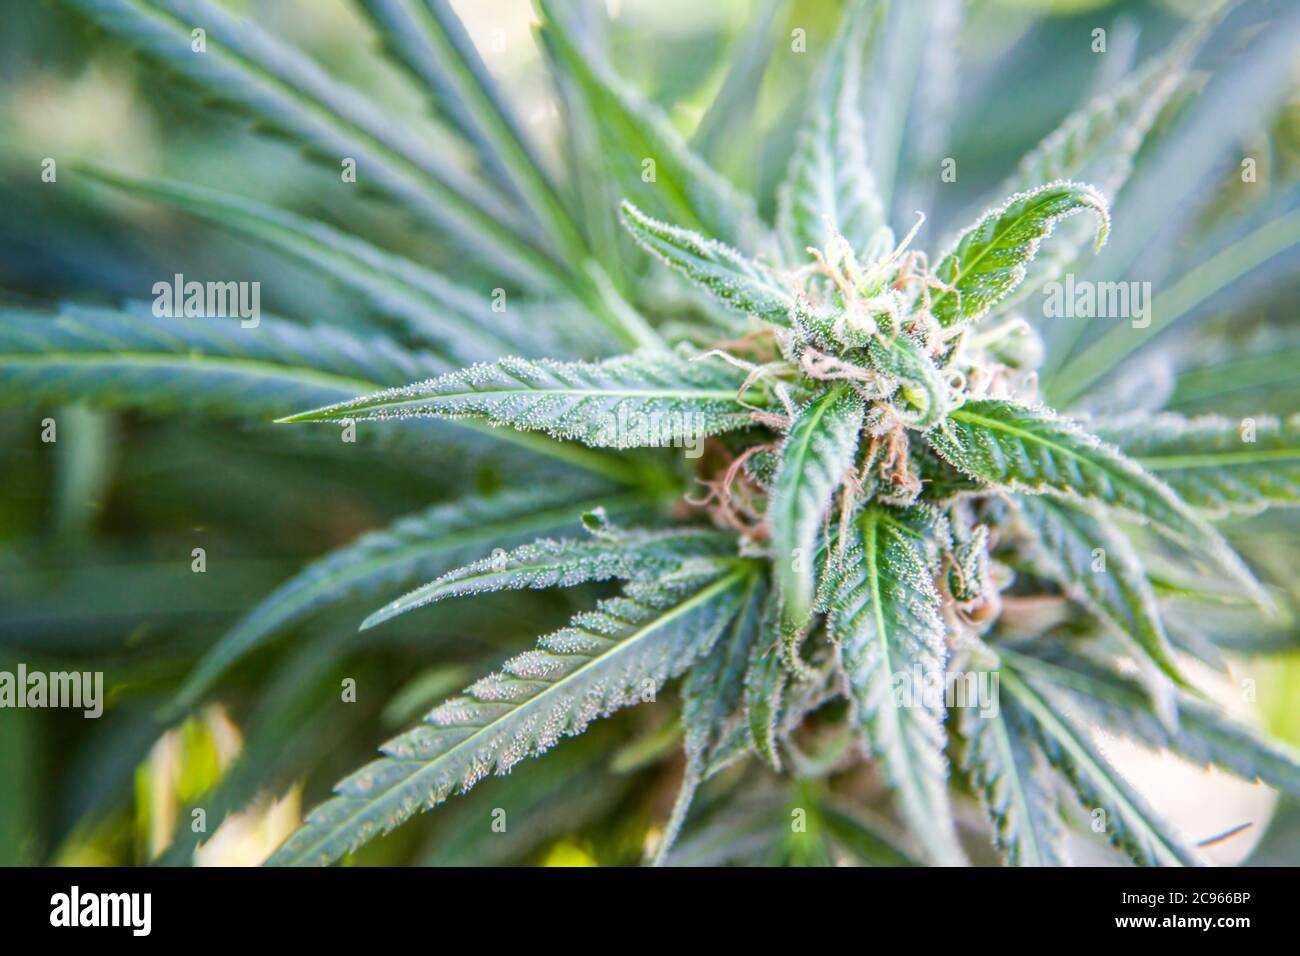 Blume Cannabis (Cannabis sativa). Cannabis enthält eine Gruppe von Chemikalien, die sogenannten Cannabinoide, die einen entspannenden narkotische Wirkung erzeugen, wenn verbraucht. Stockfoto